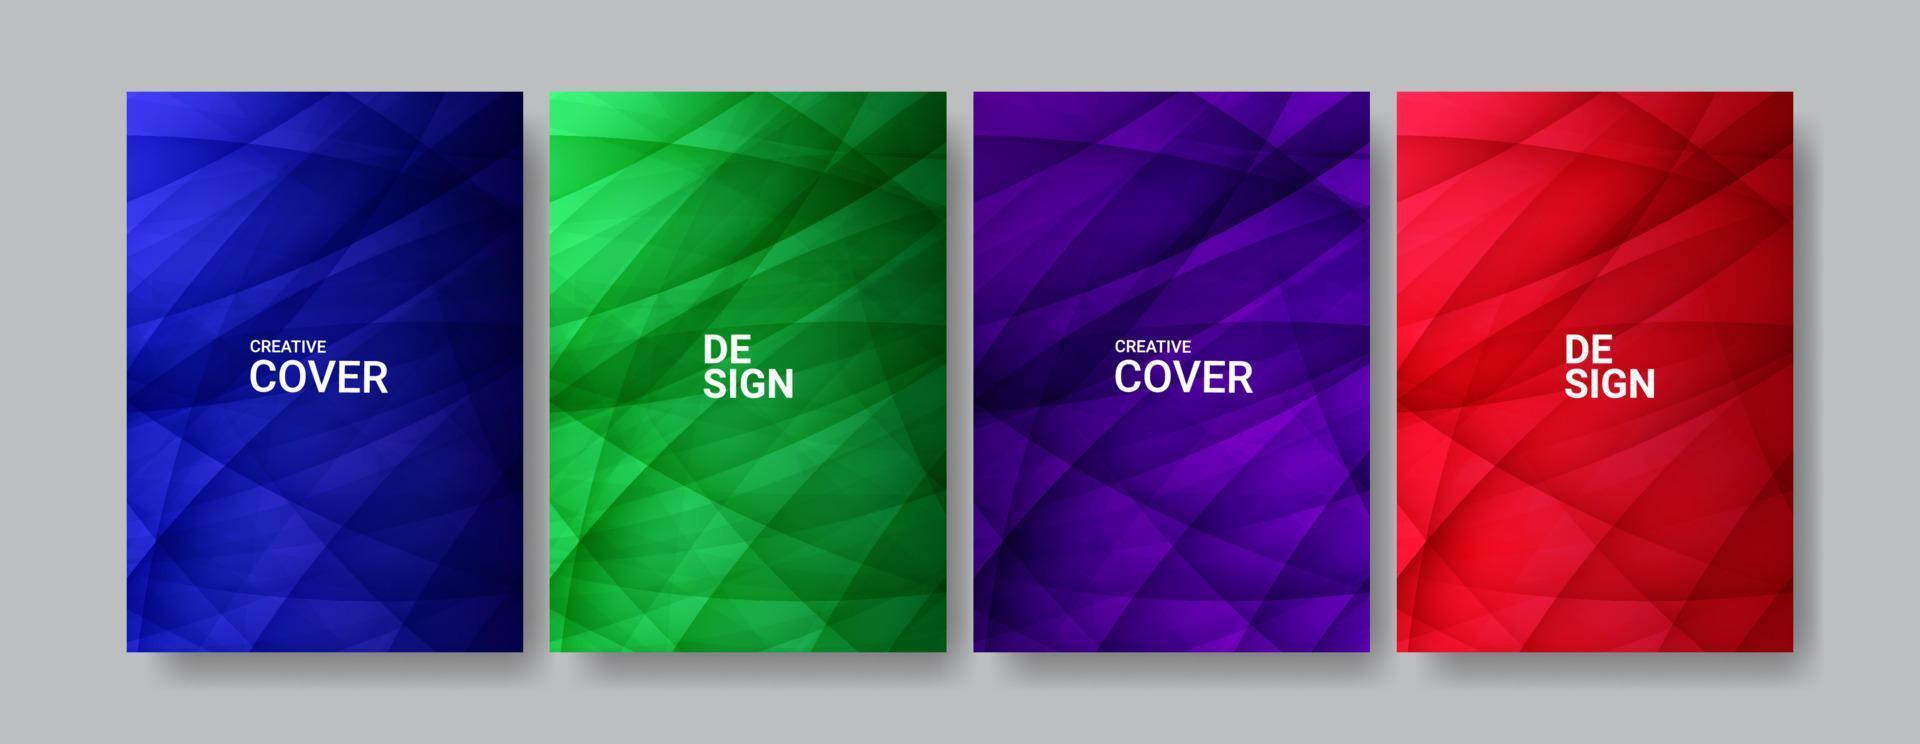 diseño colorido de la colección de portadas de negocios en tamaño a4 vector